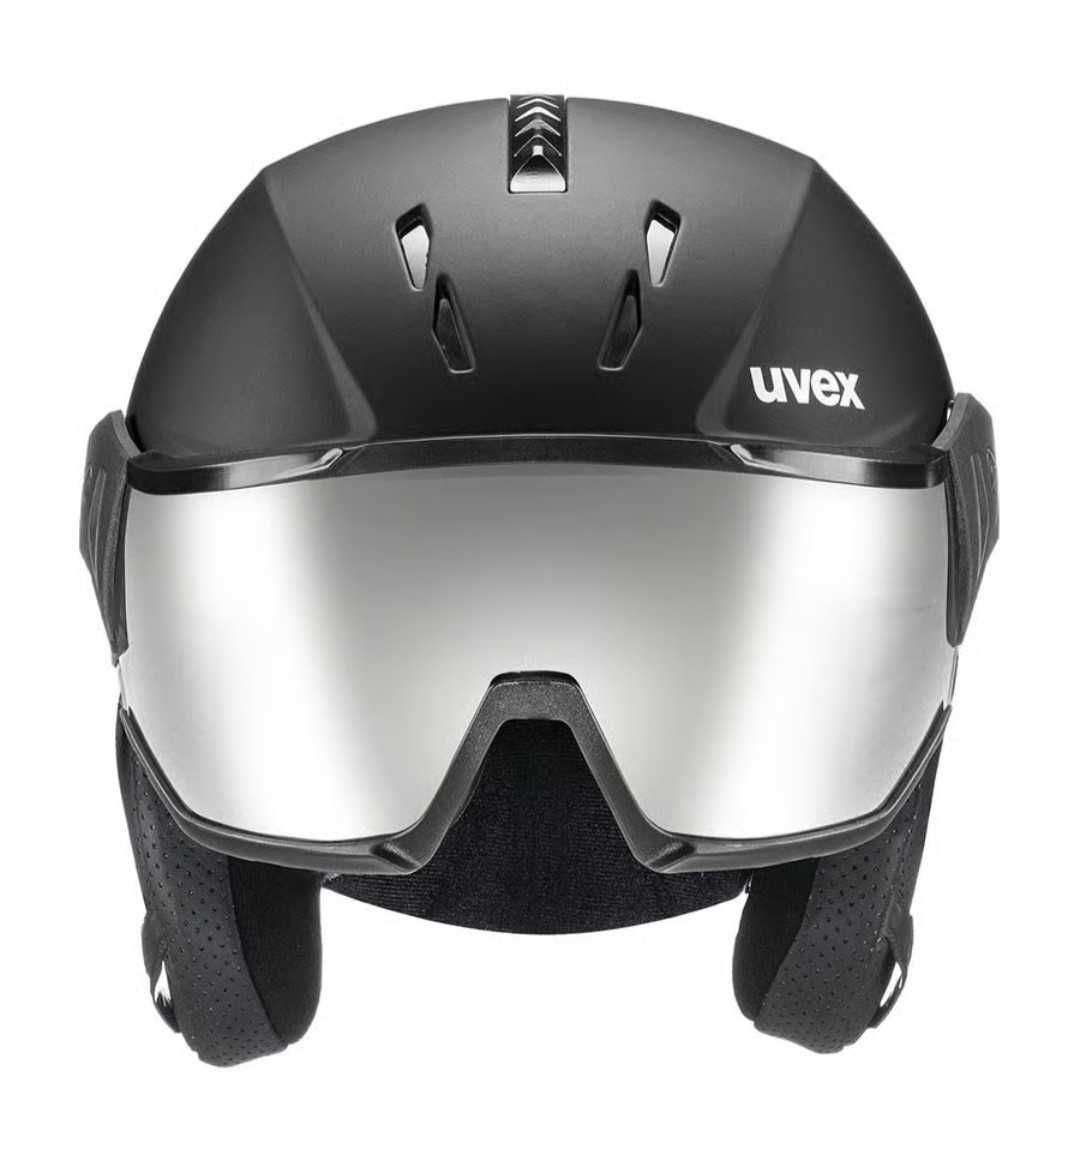 Kask UVEX INSTINCT VISOR dla narciarzy i snowboardzistów